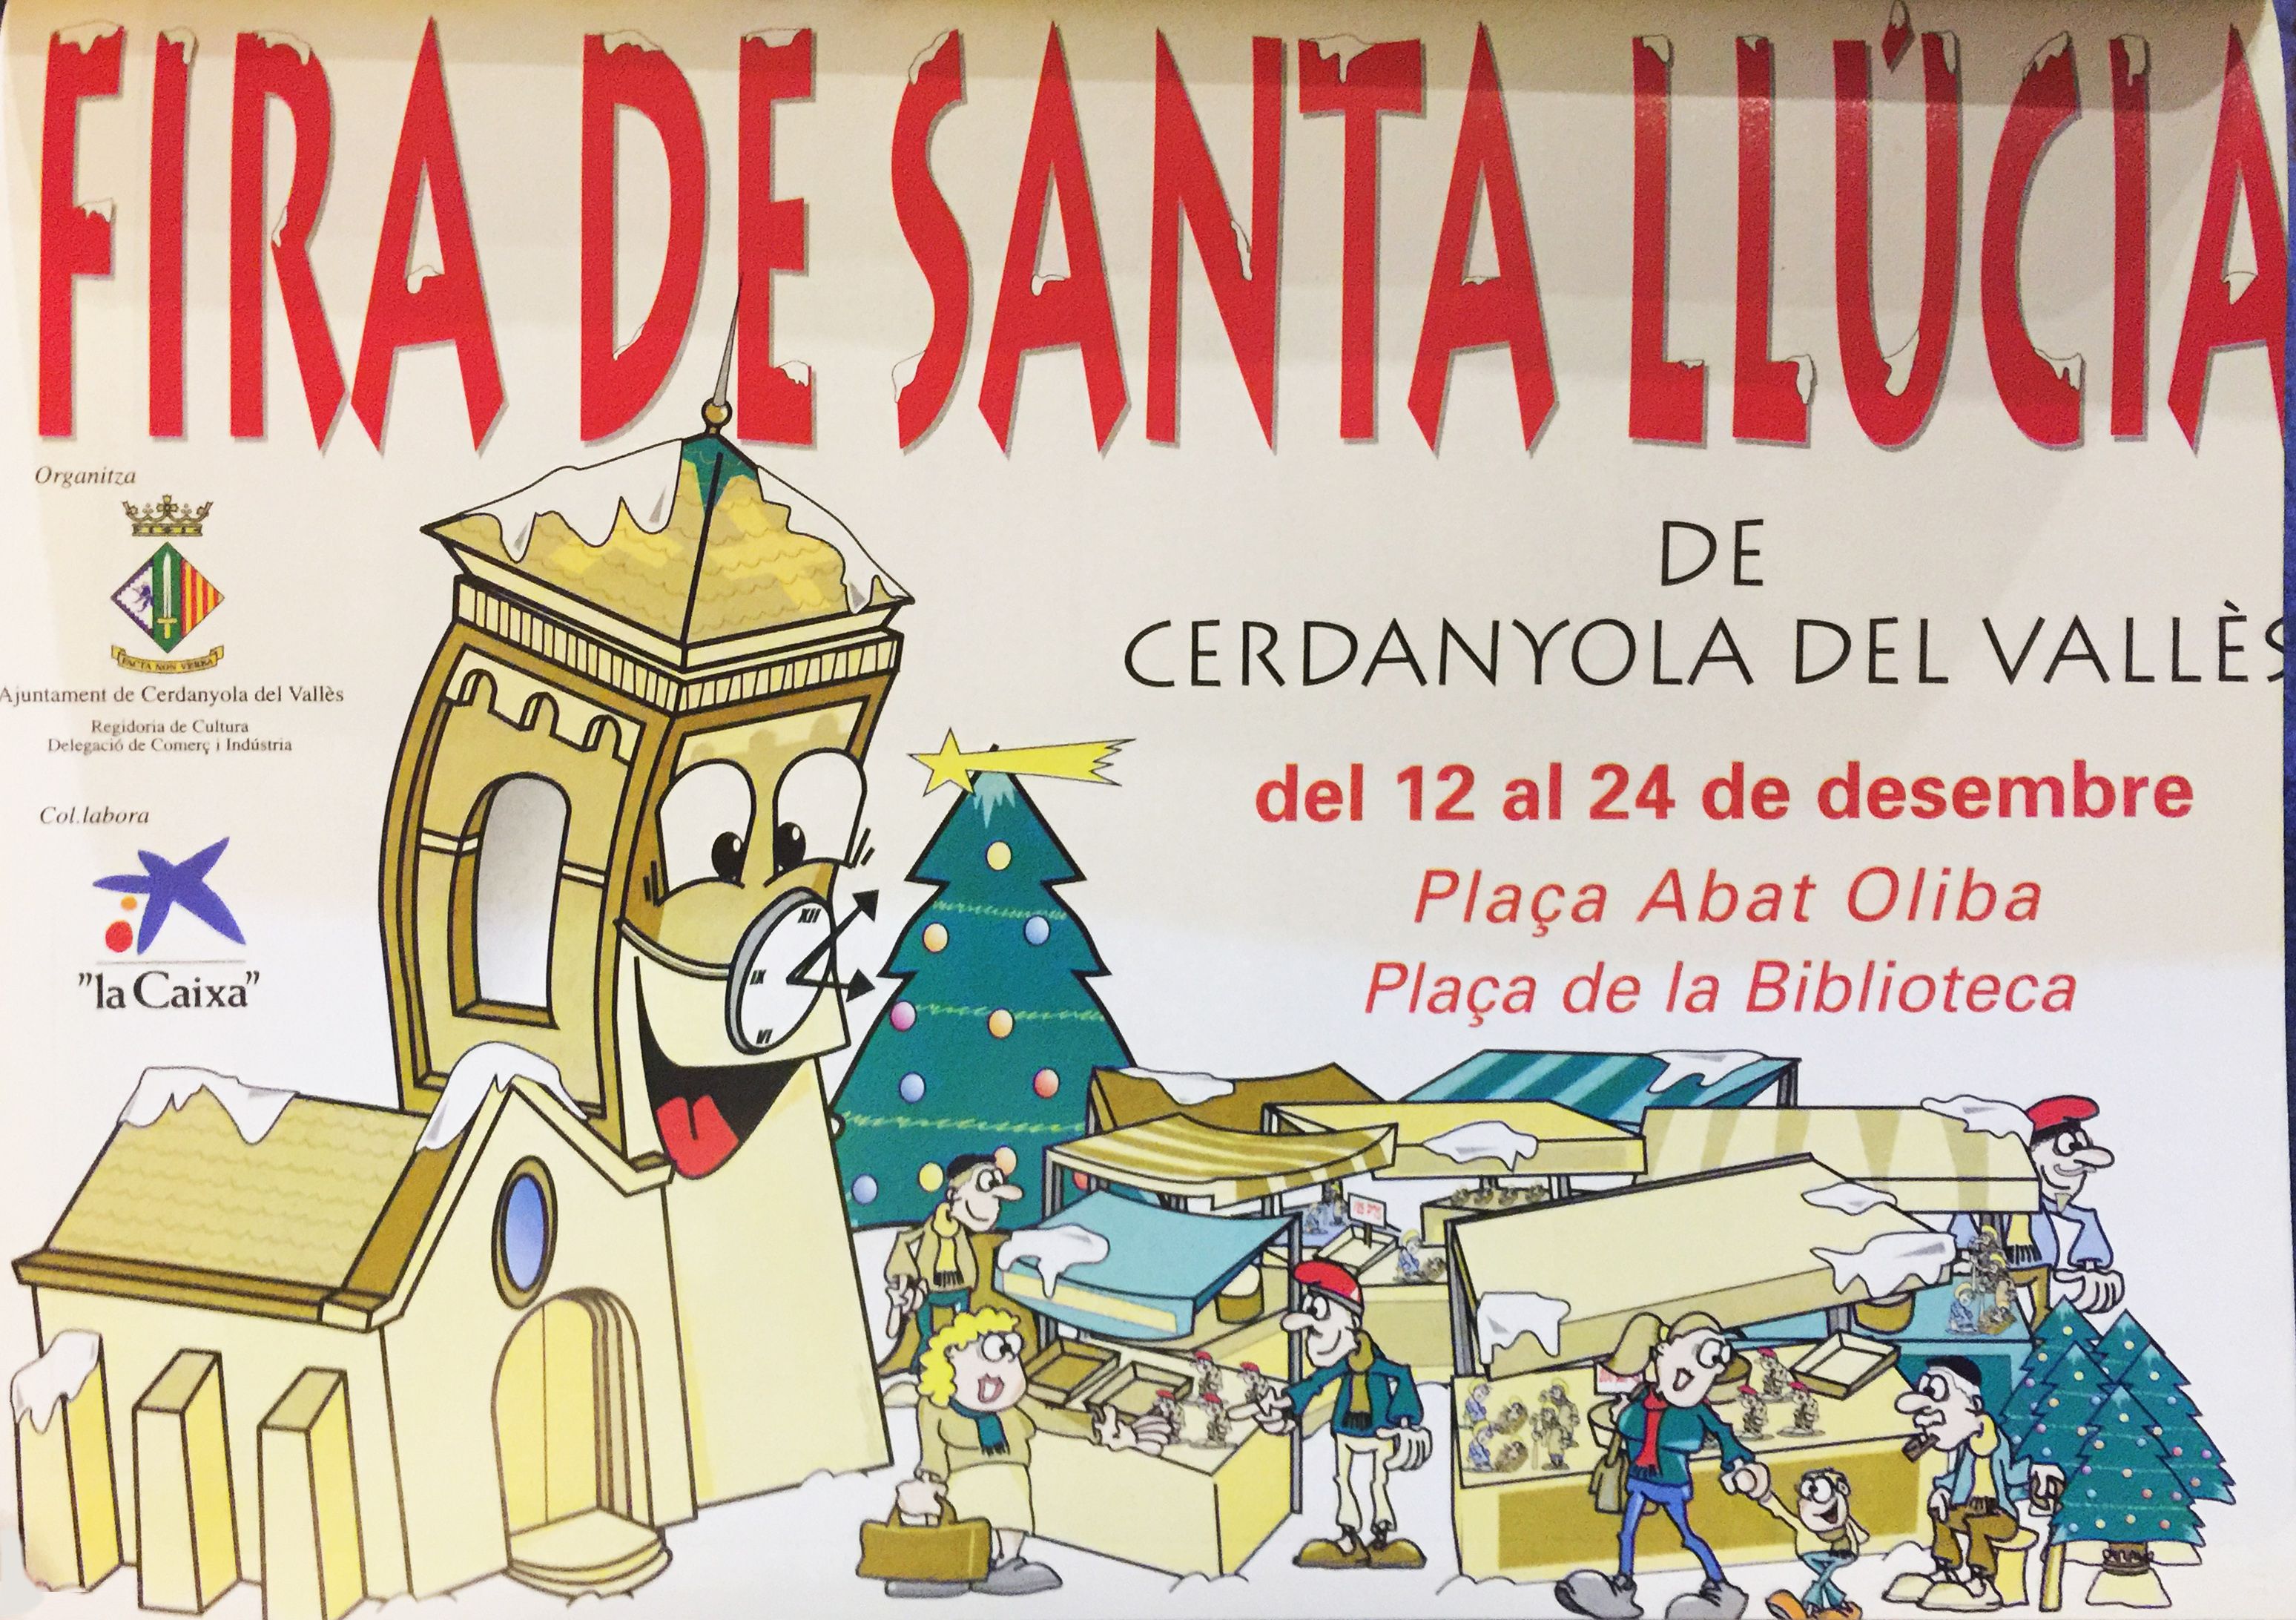 Material Promocional de la Fira de Santa Llúcia a Cerdanyola (1997)